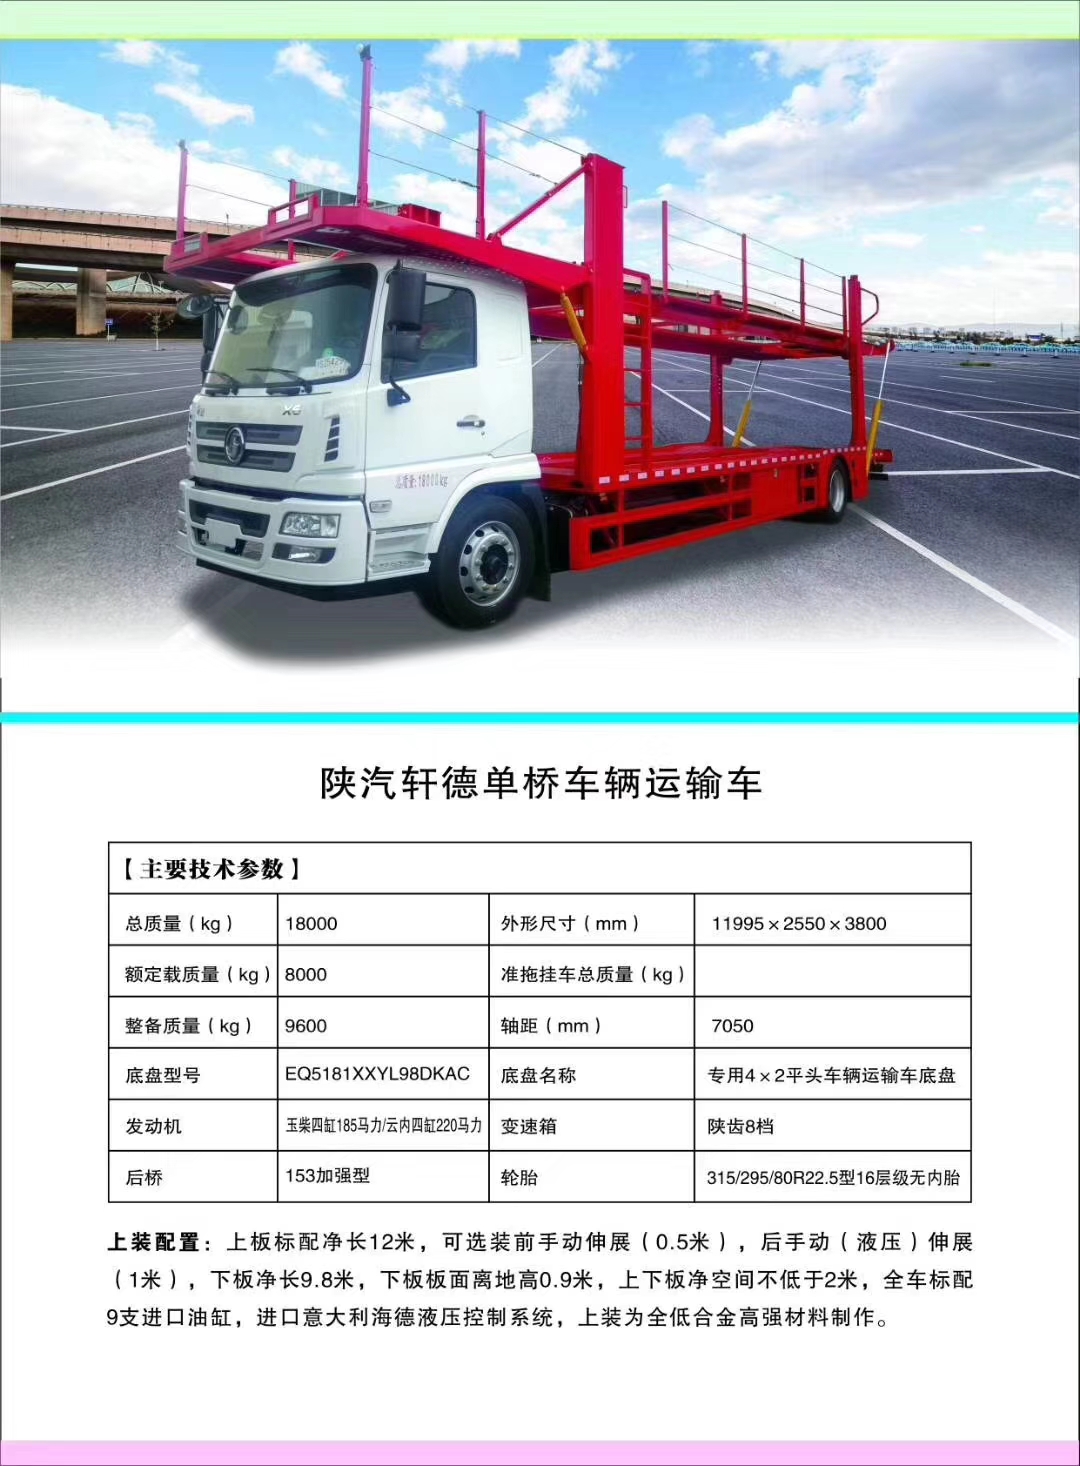 j9.com(中国区)官方网站轿运车产品型号及配置